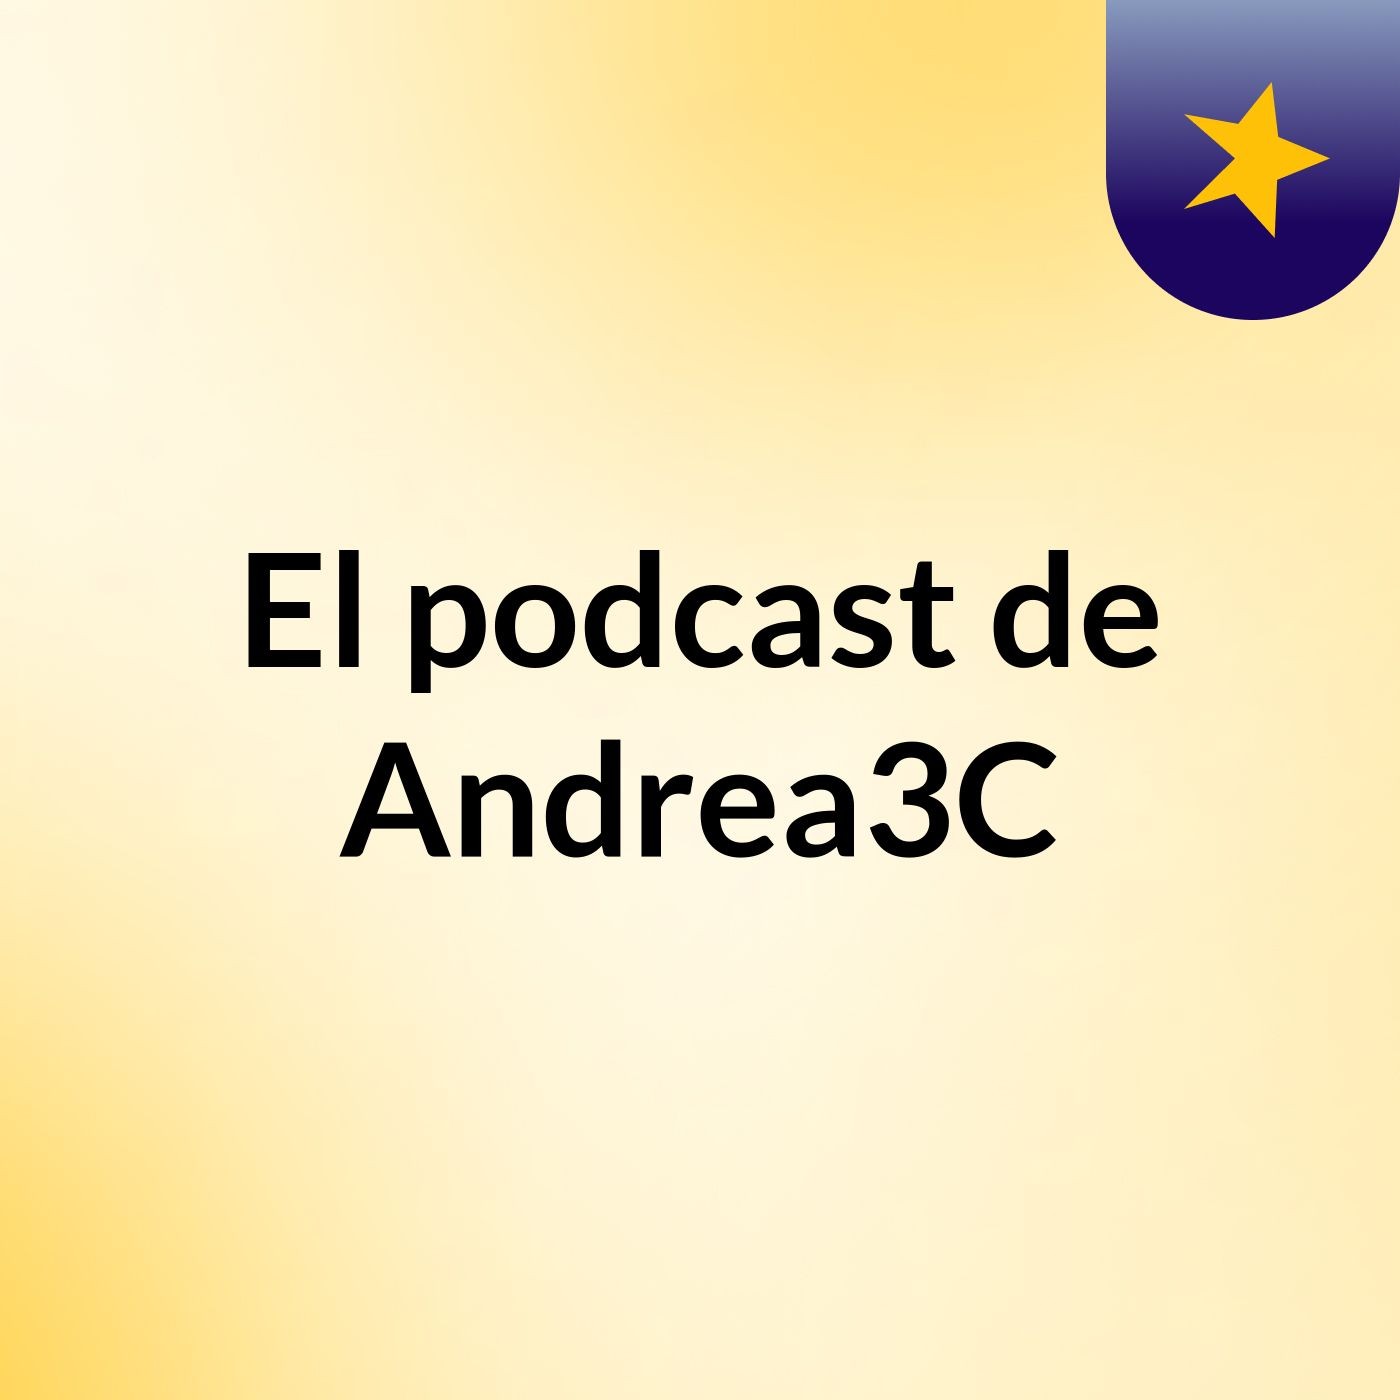 El podcast de Andrea3C